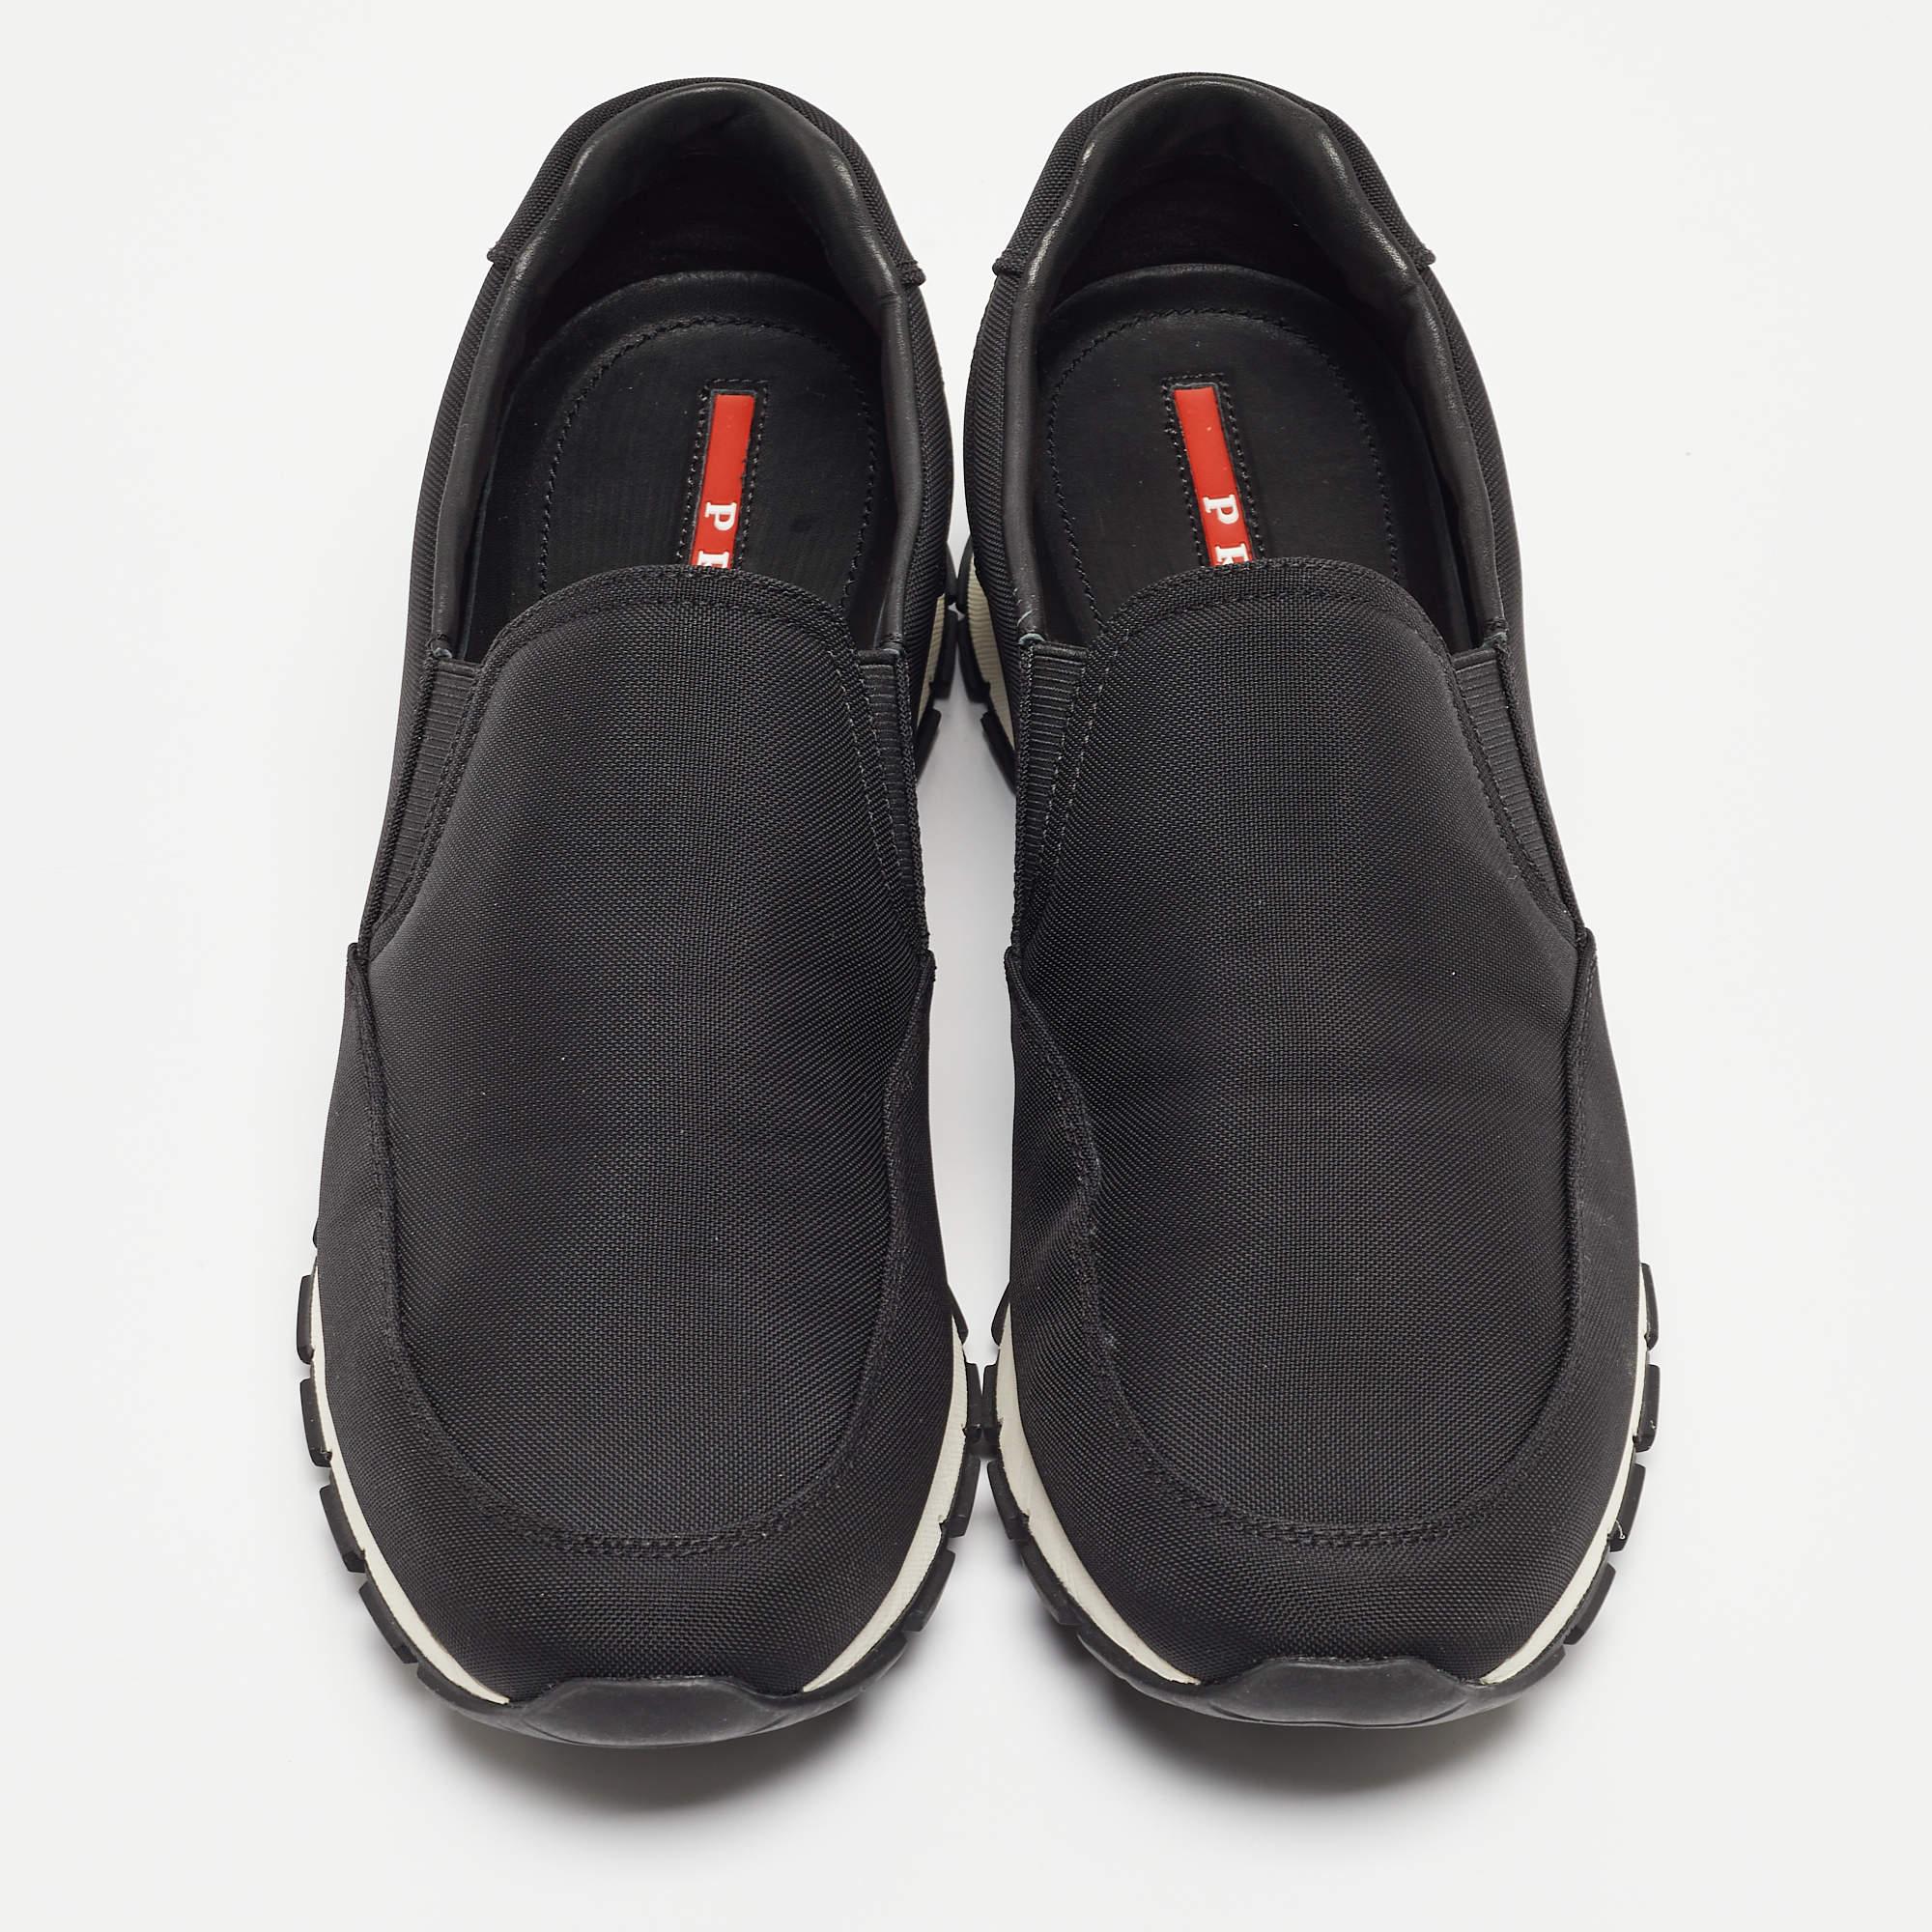 Donnez à votre tenue une touche de luxe avec cette paire de baskets noires Prada. La création est cousue à la perfection pour vous permettre de les porter pendant longtemps.

Comprend
Sac à poussière original